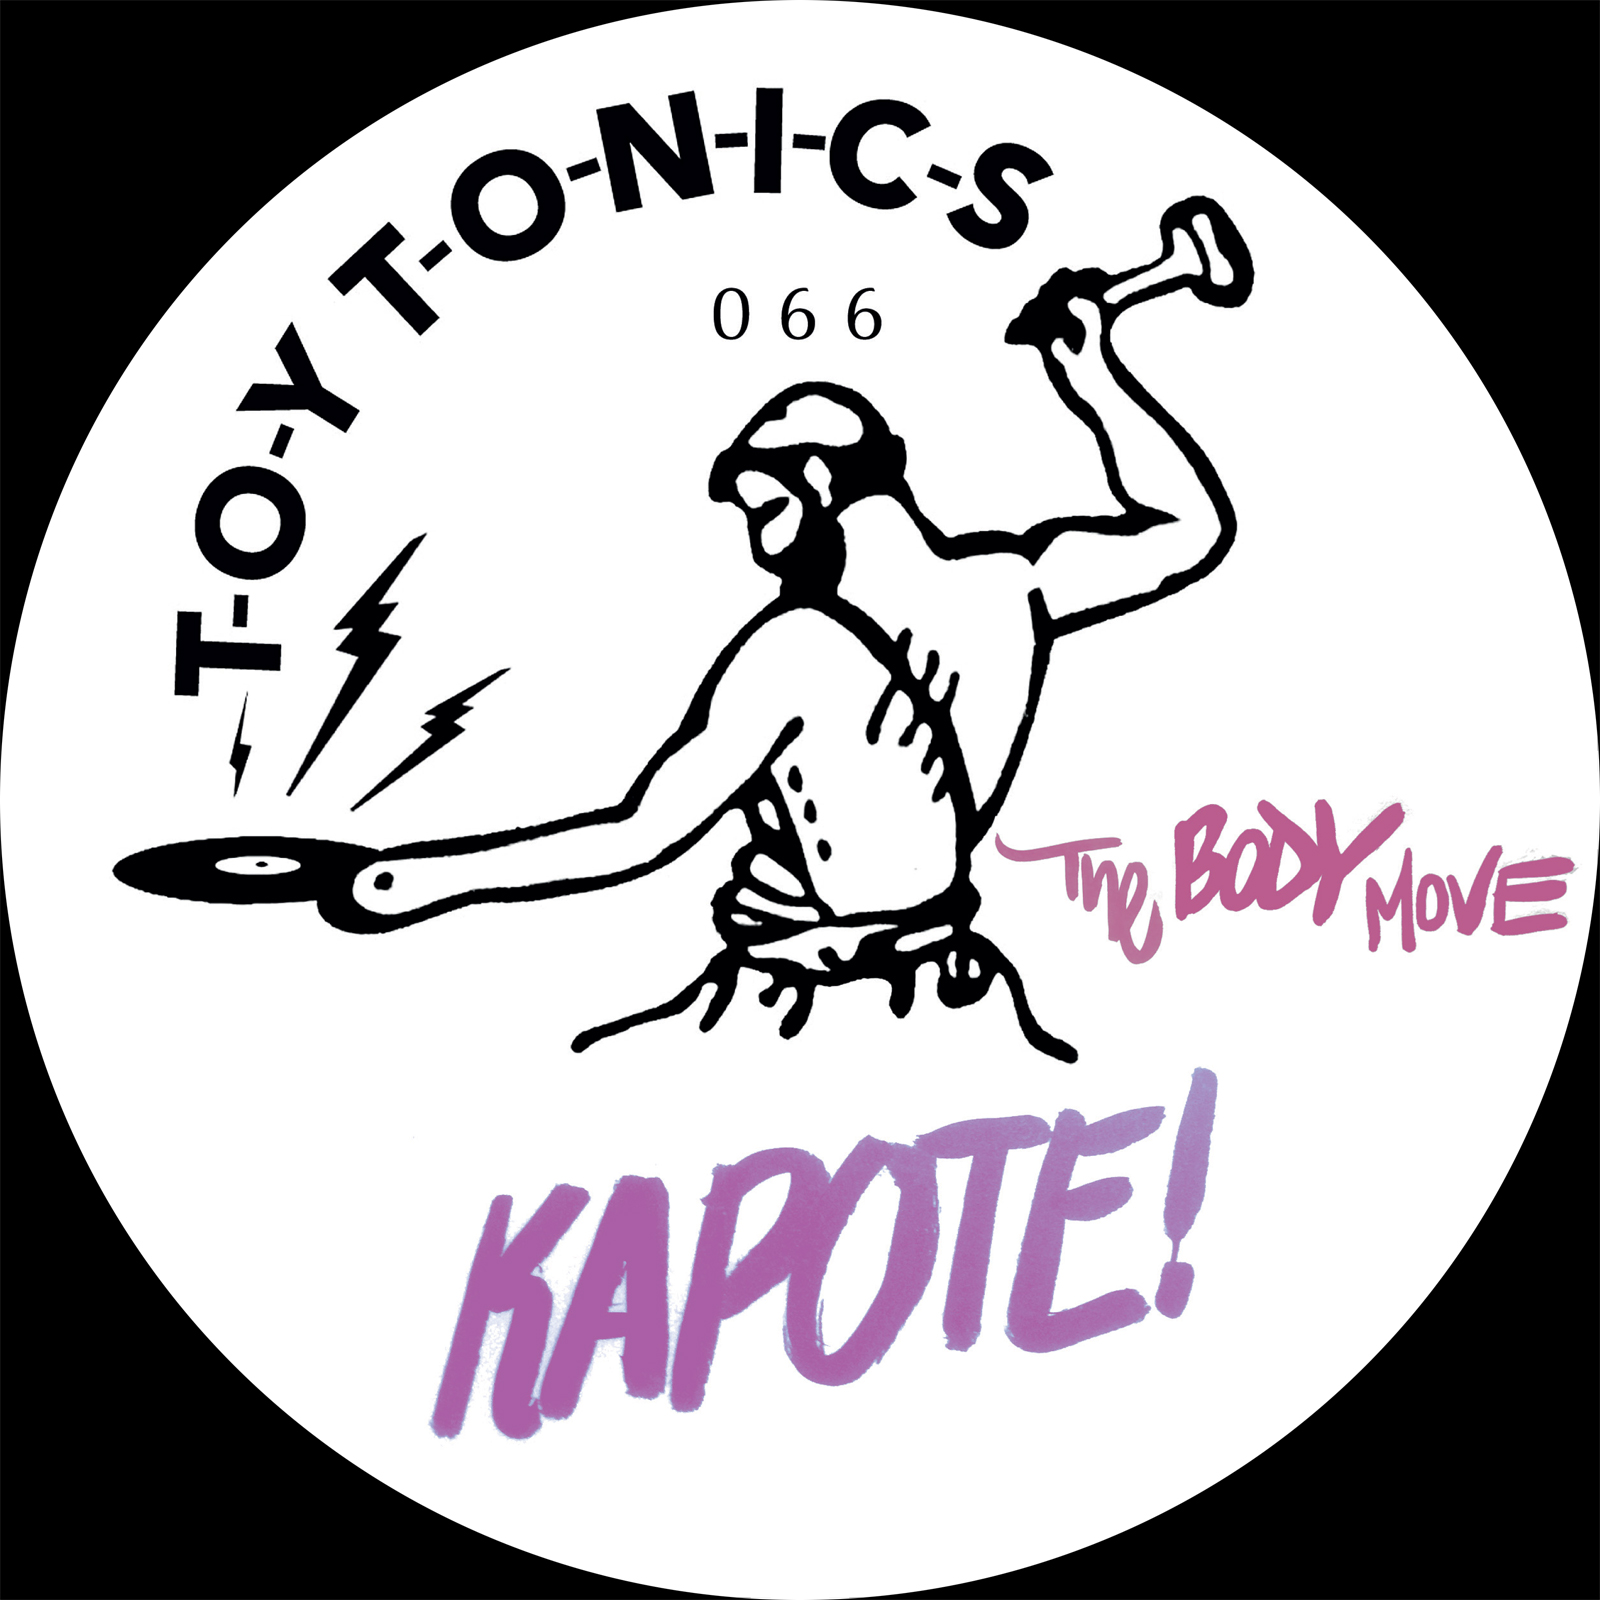 Kapote - The Body Move [TOYT066]